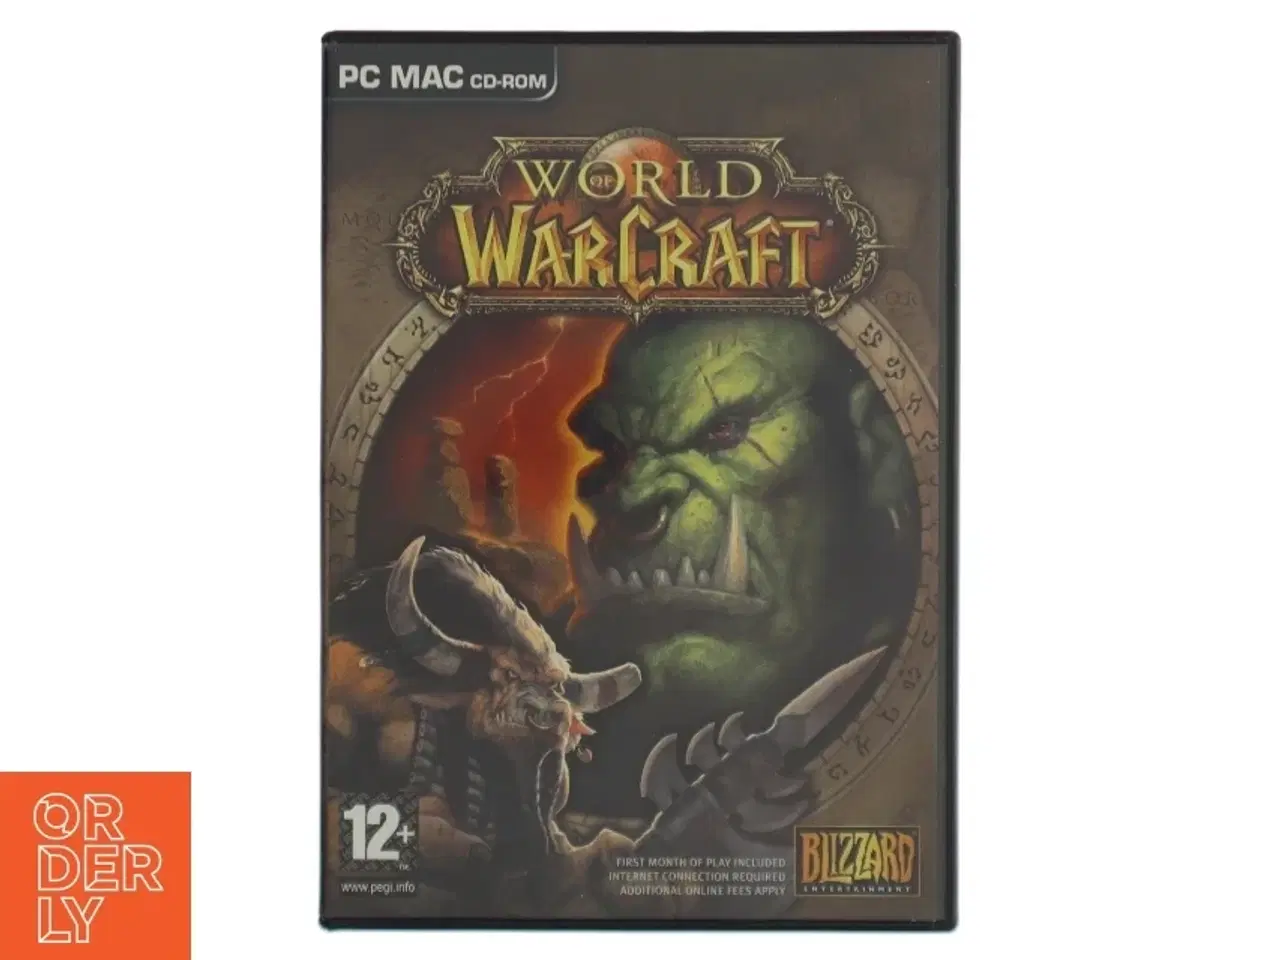 Billede 1 - World of Warcraft PC/MAC CD-ROM spil fra Blizzard